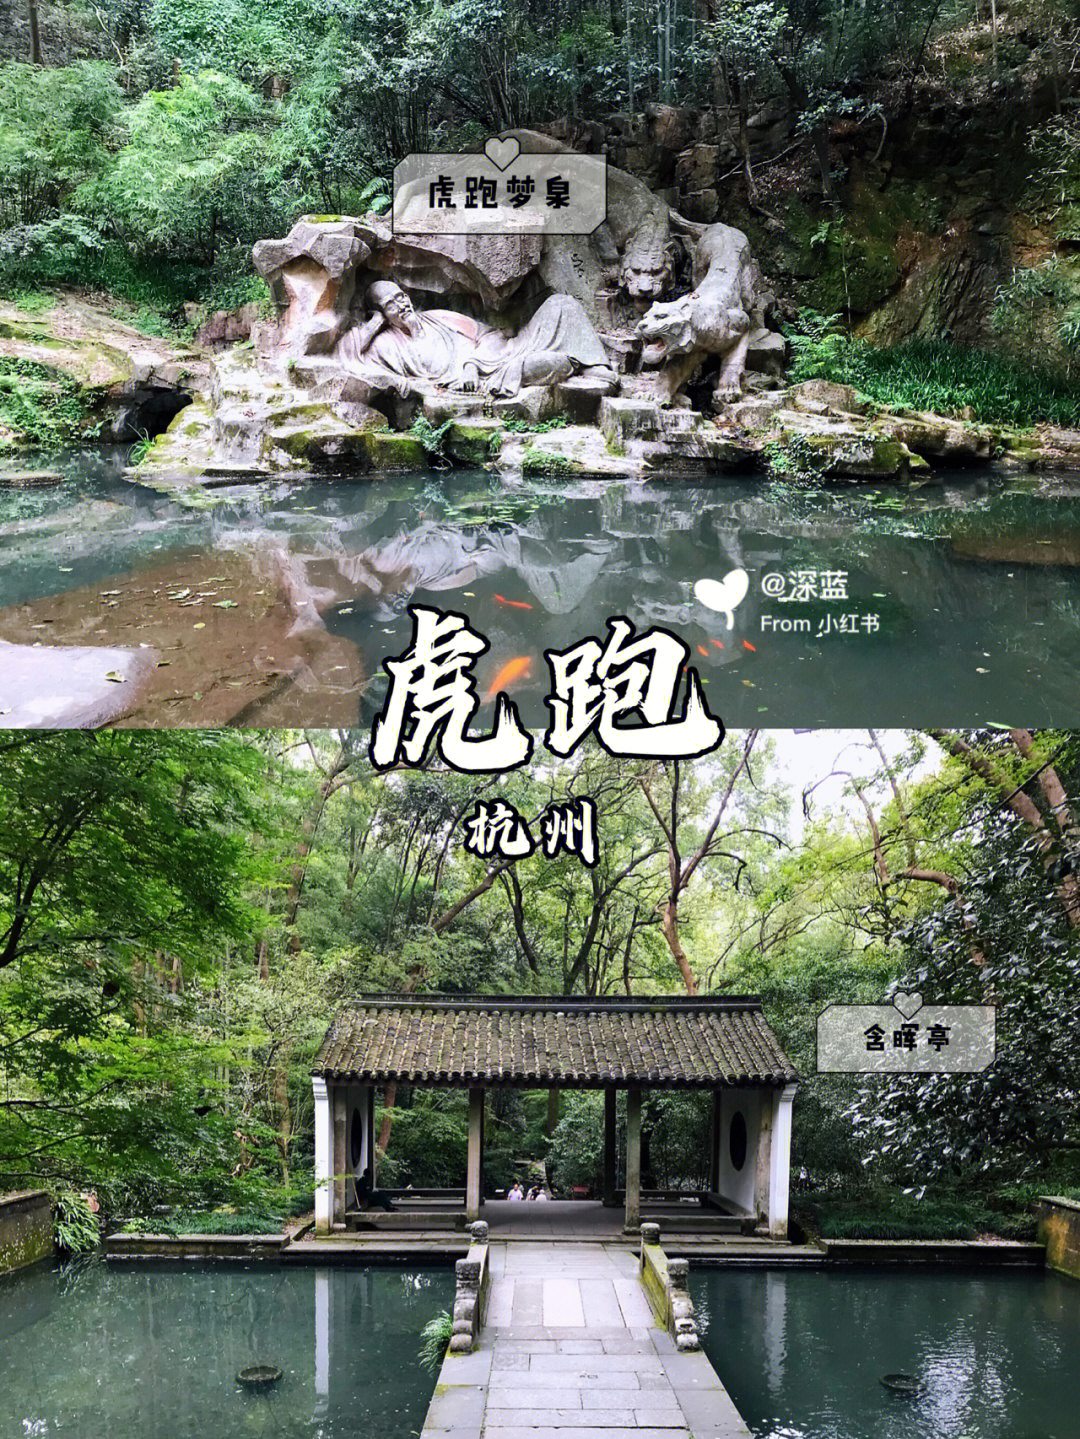 虎跑公园位于西湖之南,大慈山定慧禅寺内虎跑的来历,有个神话传说